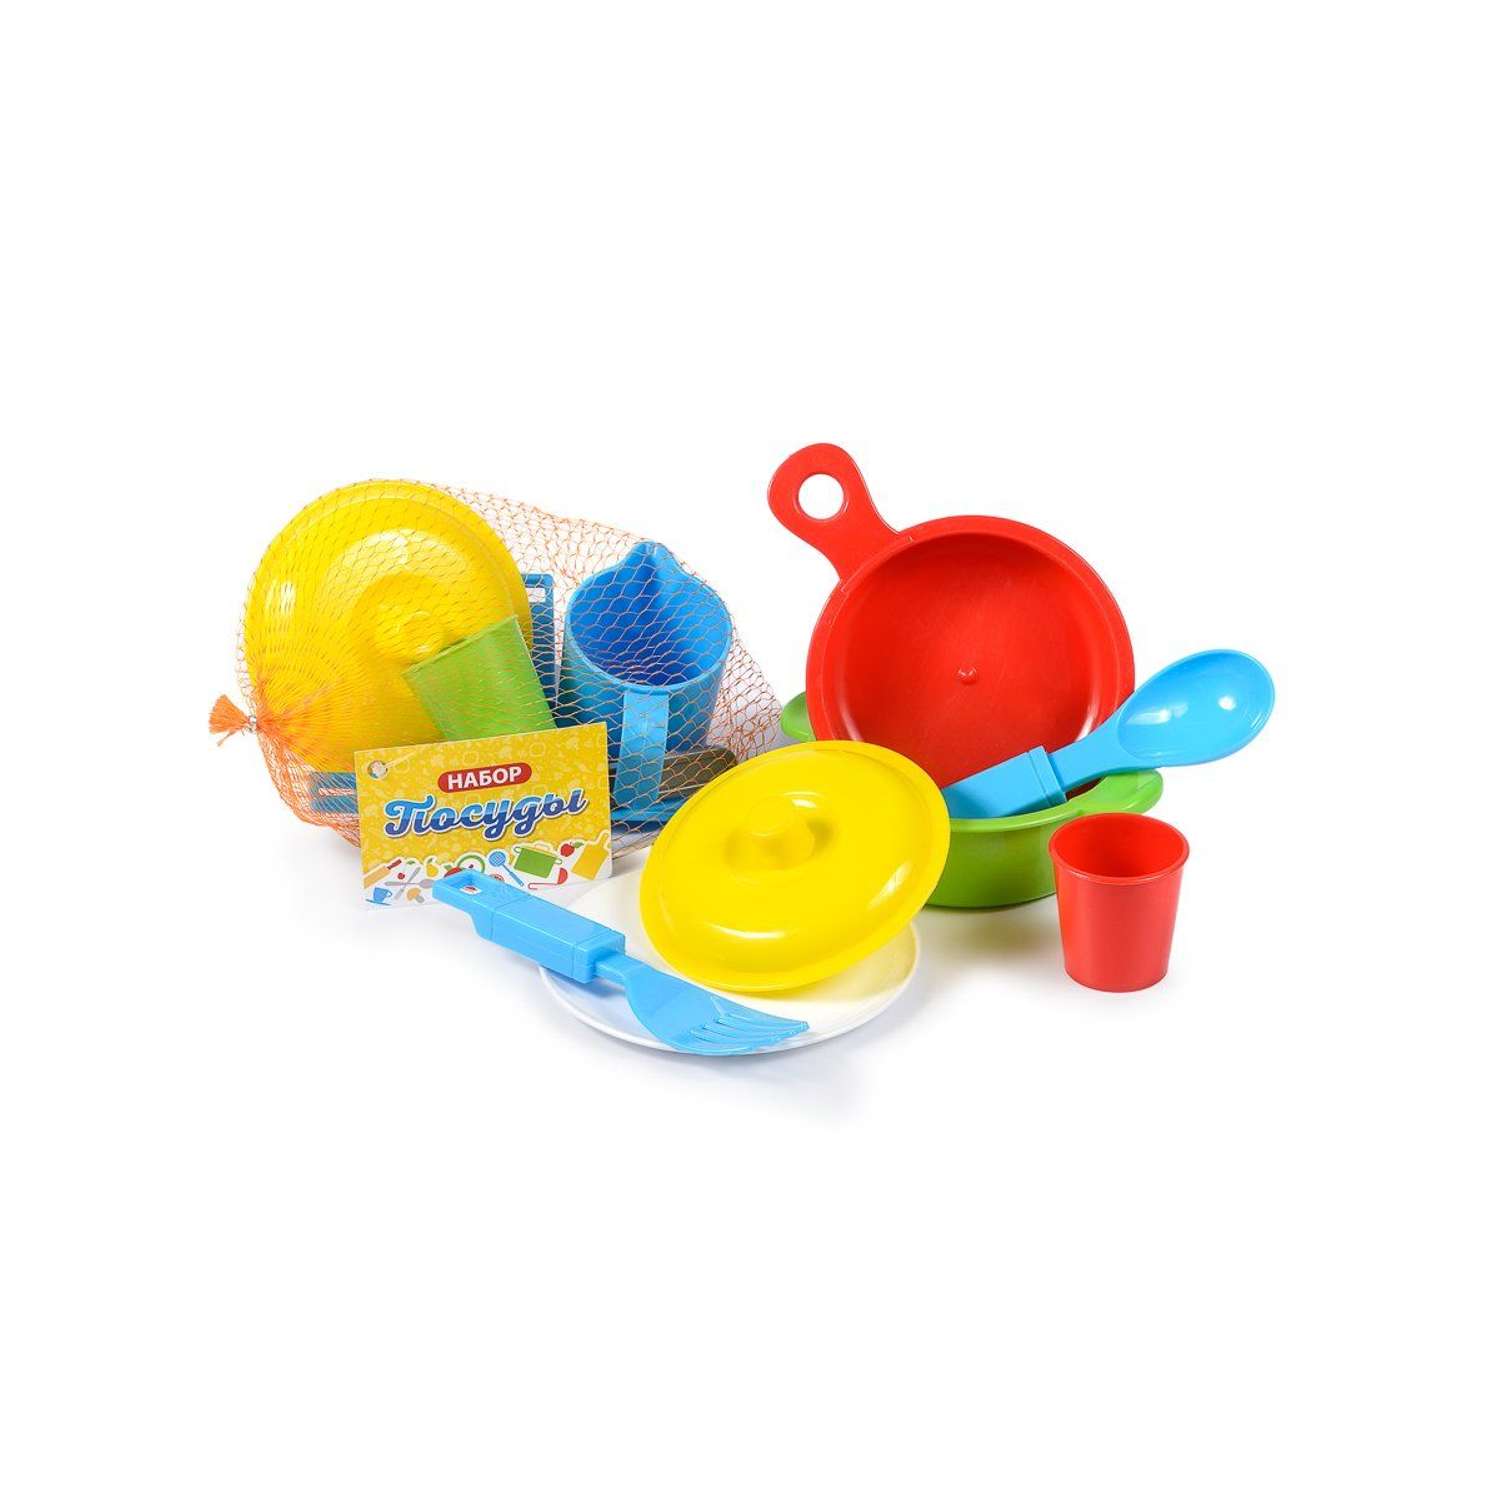 Игрушечная посуда детская Green Plast игровой набор для кухни 15 шт - фото 3